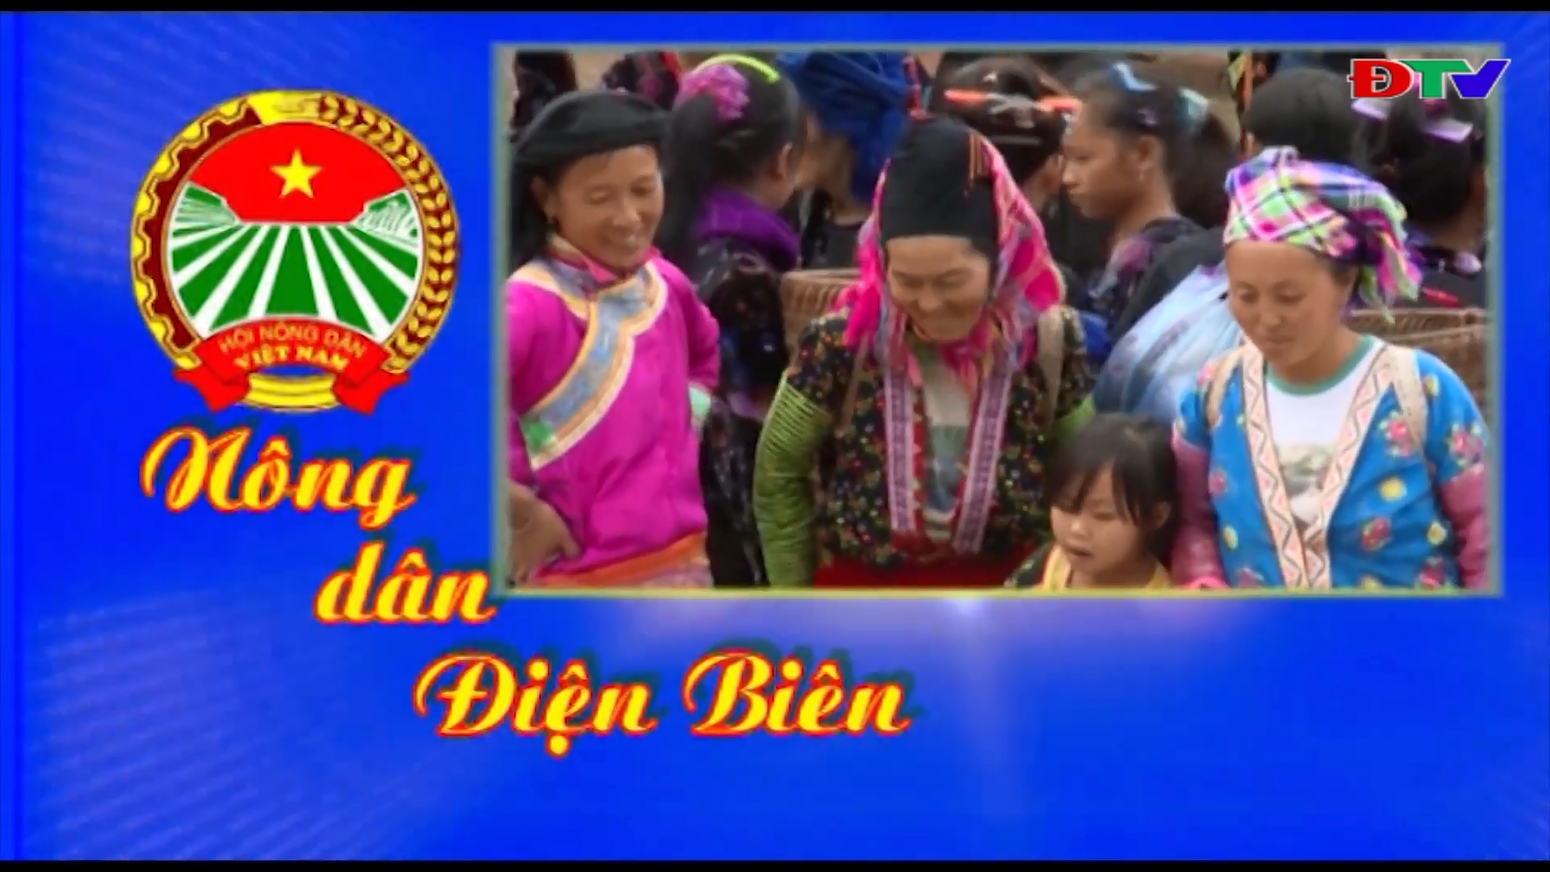 Nông dân Điện Biên (Tháng 01-2020)